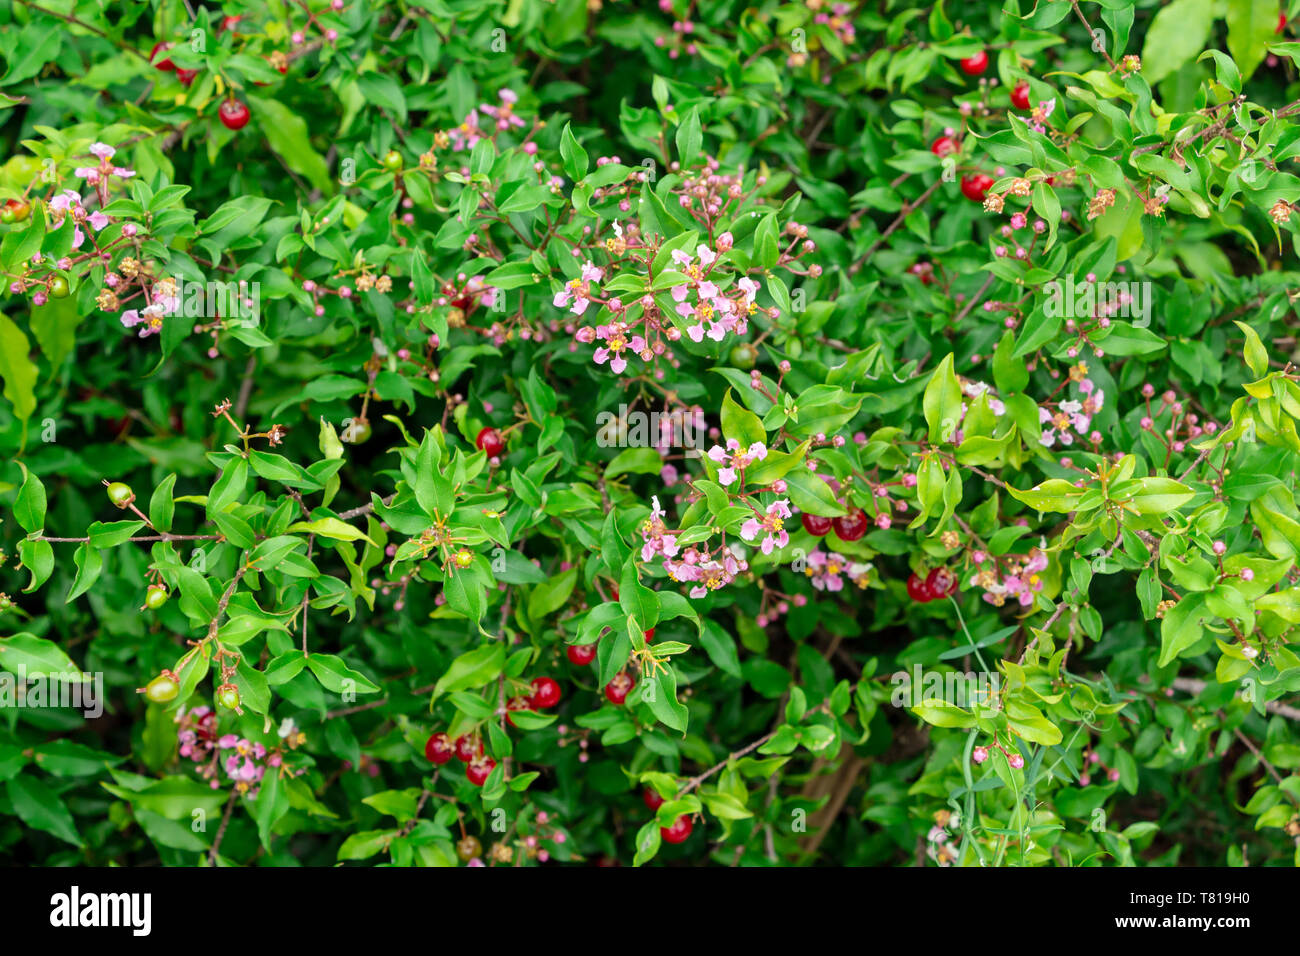 Barbados Kirsche alias wild Aster alias Acerola (malpighia glabra) mit rosa Blumen und roten Beeren - Davie, Florida, USA Stockfoto